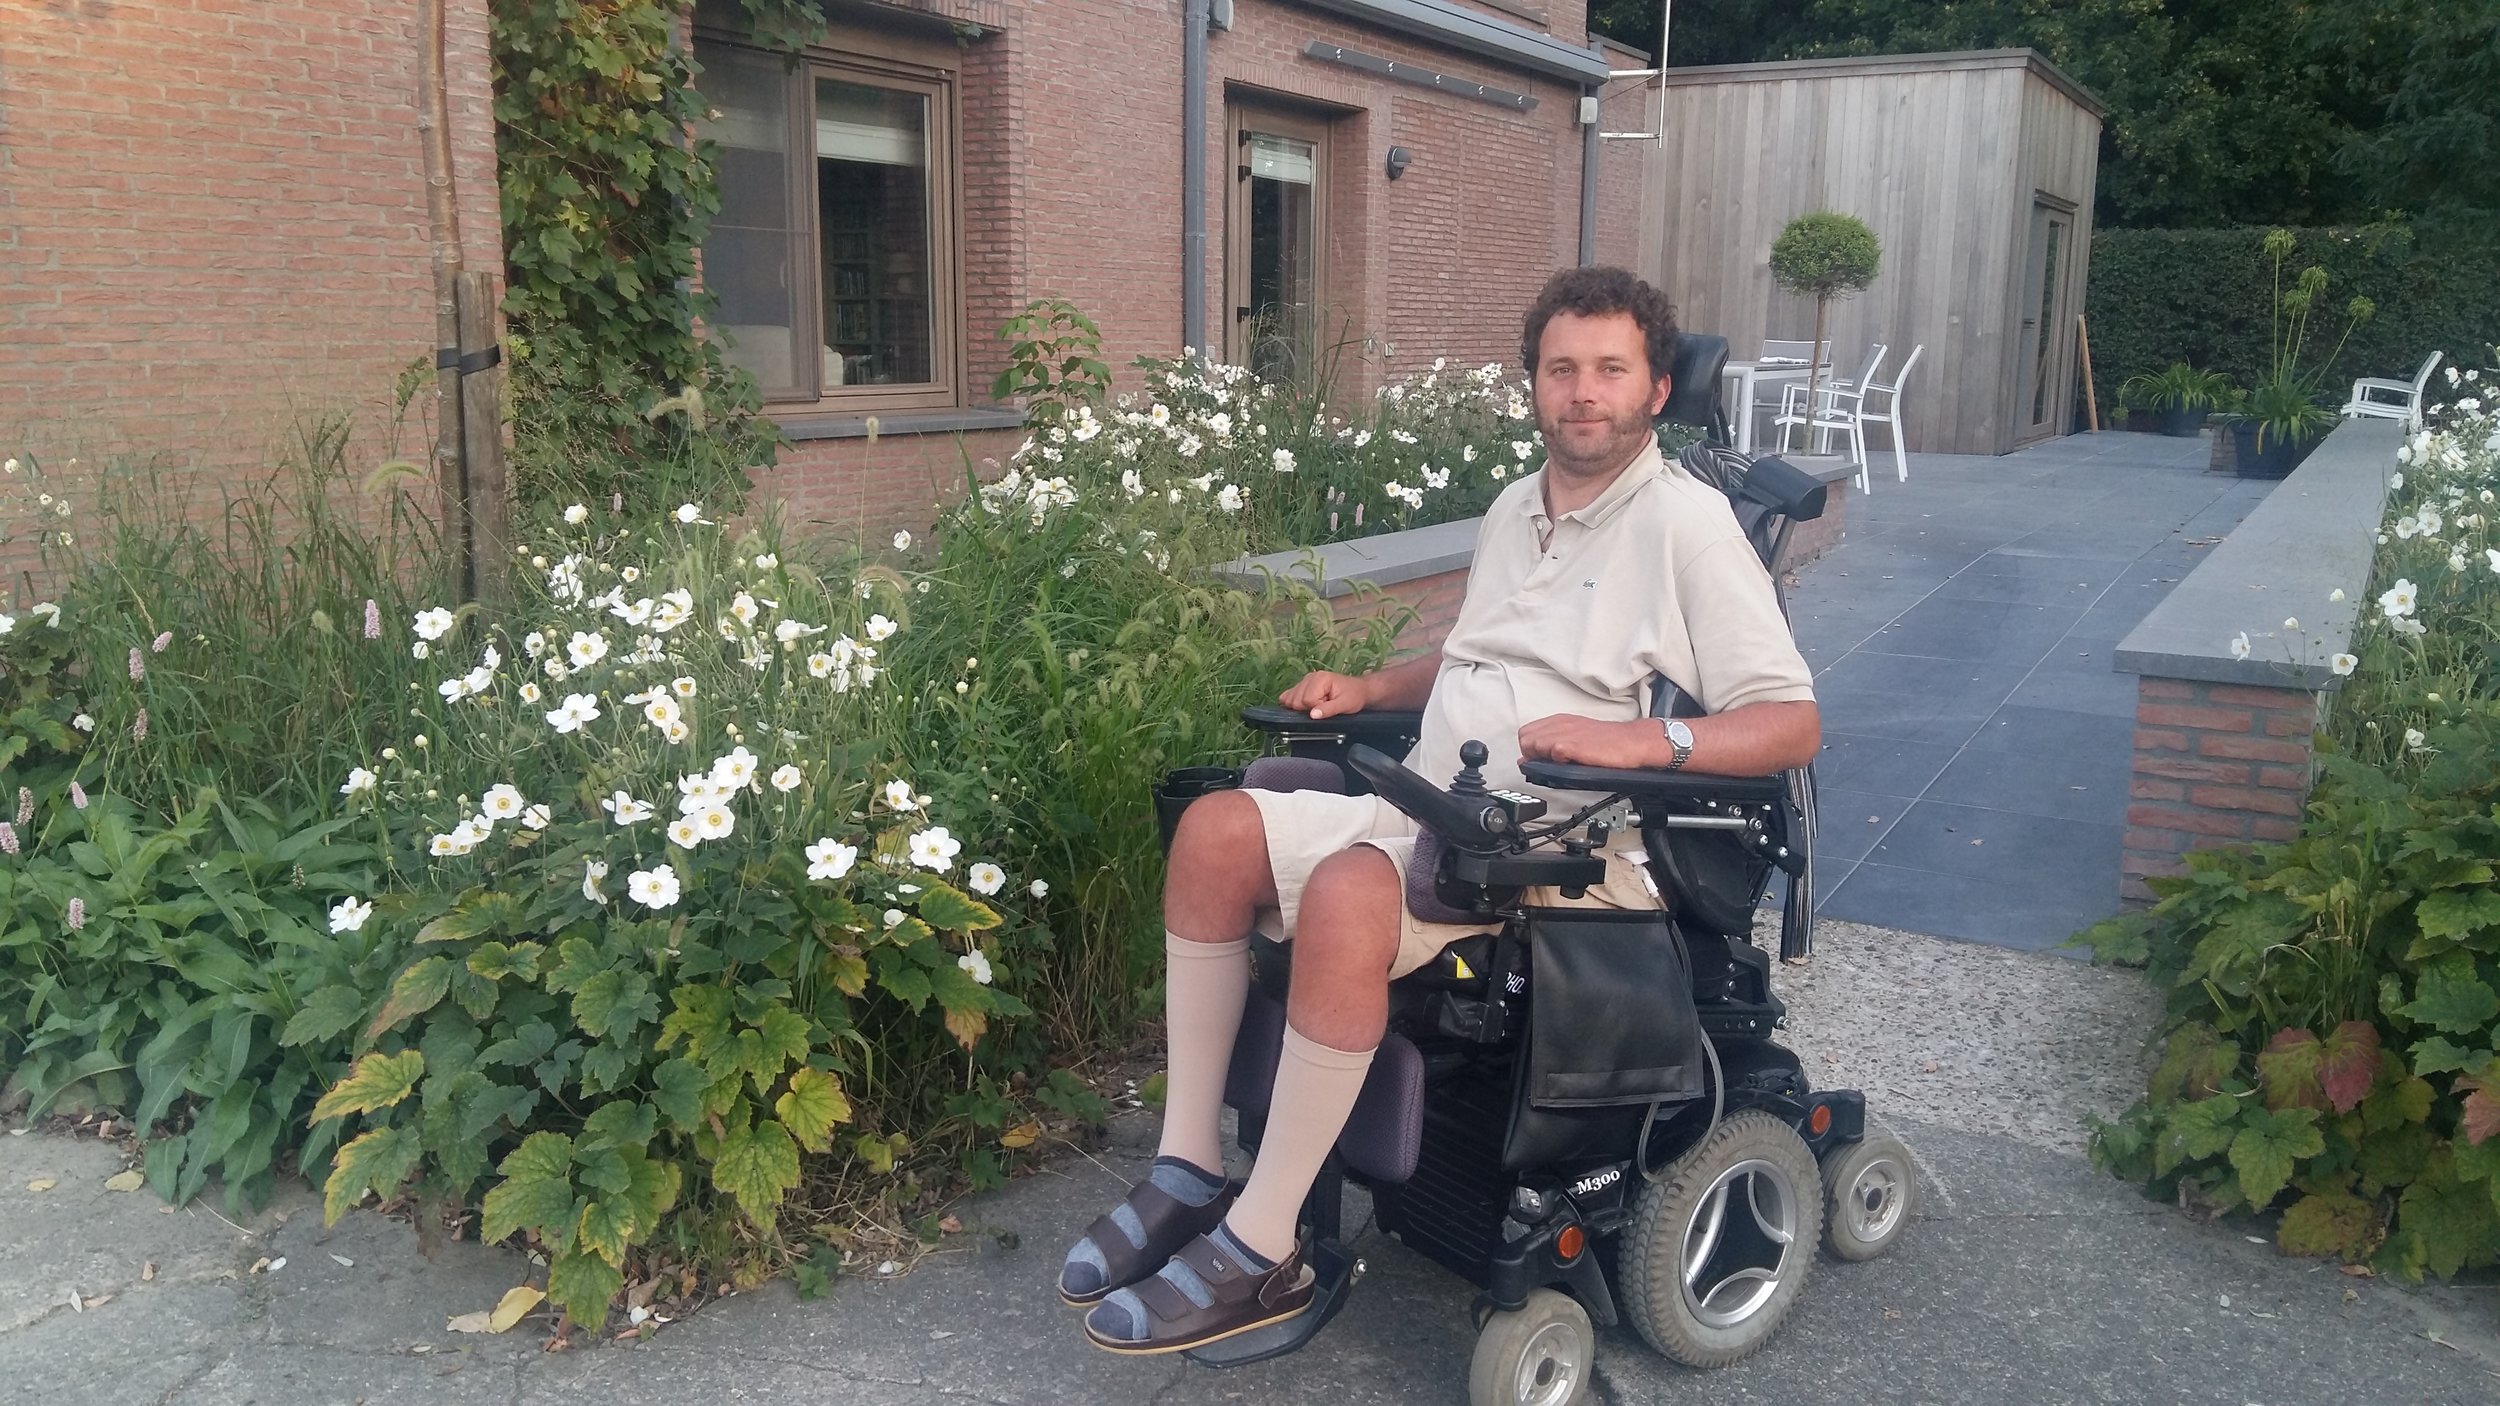   David wil graag op café met vrienden   David is 38 en woont in Hamme. Hij zit in een elektrische rolstoel toen ongeluk hem trof tijdens de storm op Pukkelpop. Daardoor kan hij moeilijk op in zijn eentje naar zijn stamcafé.   Ik ga met David op café